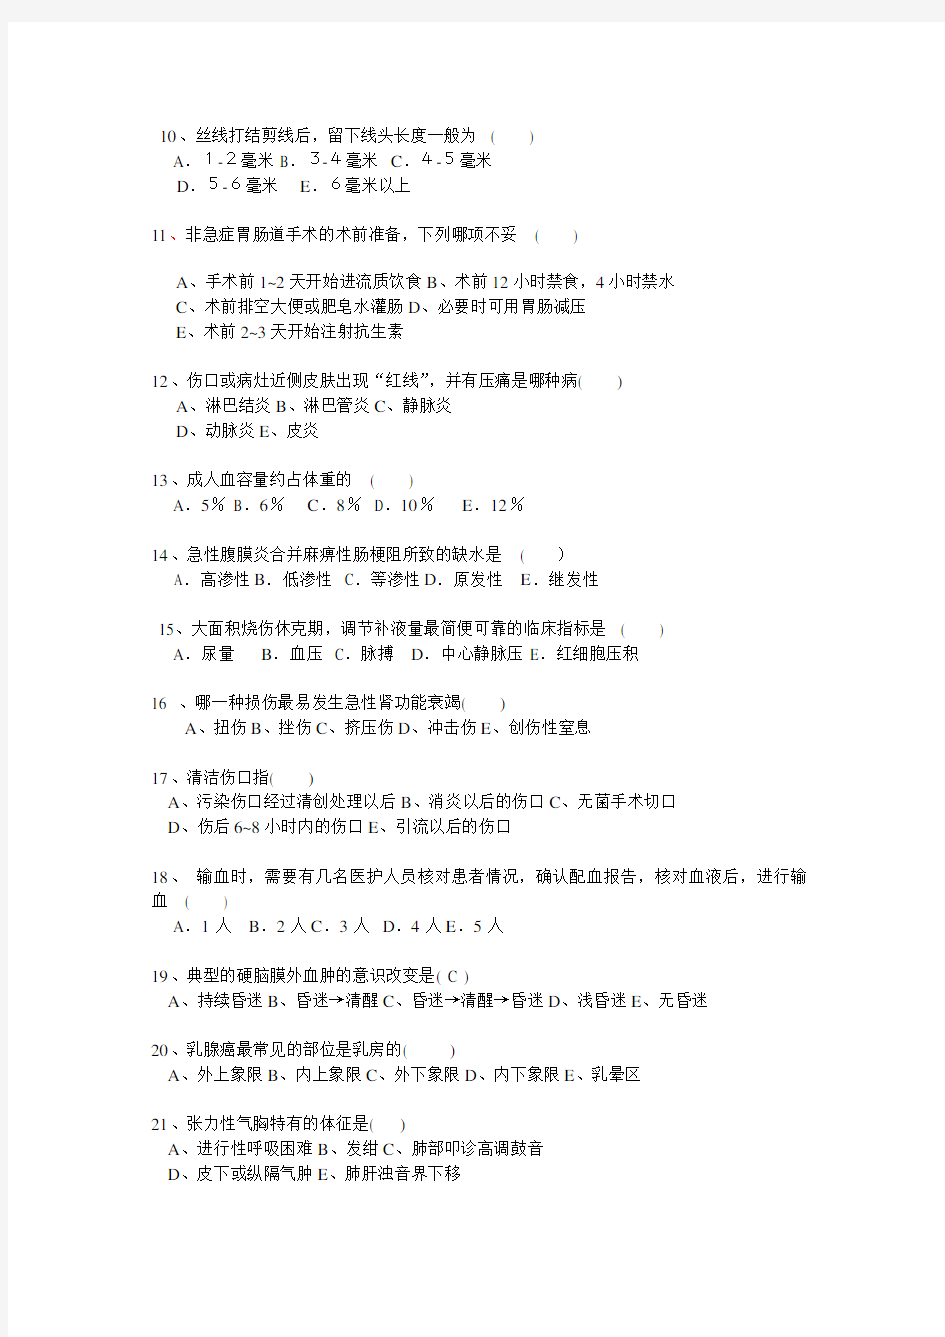 2014年大外科三基试题及答案(六月).上传